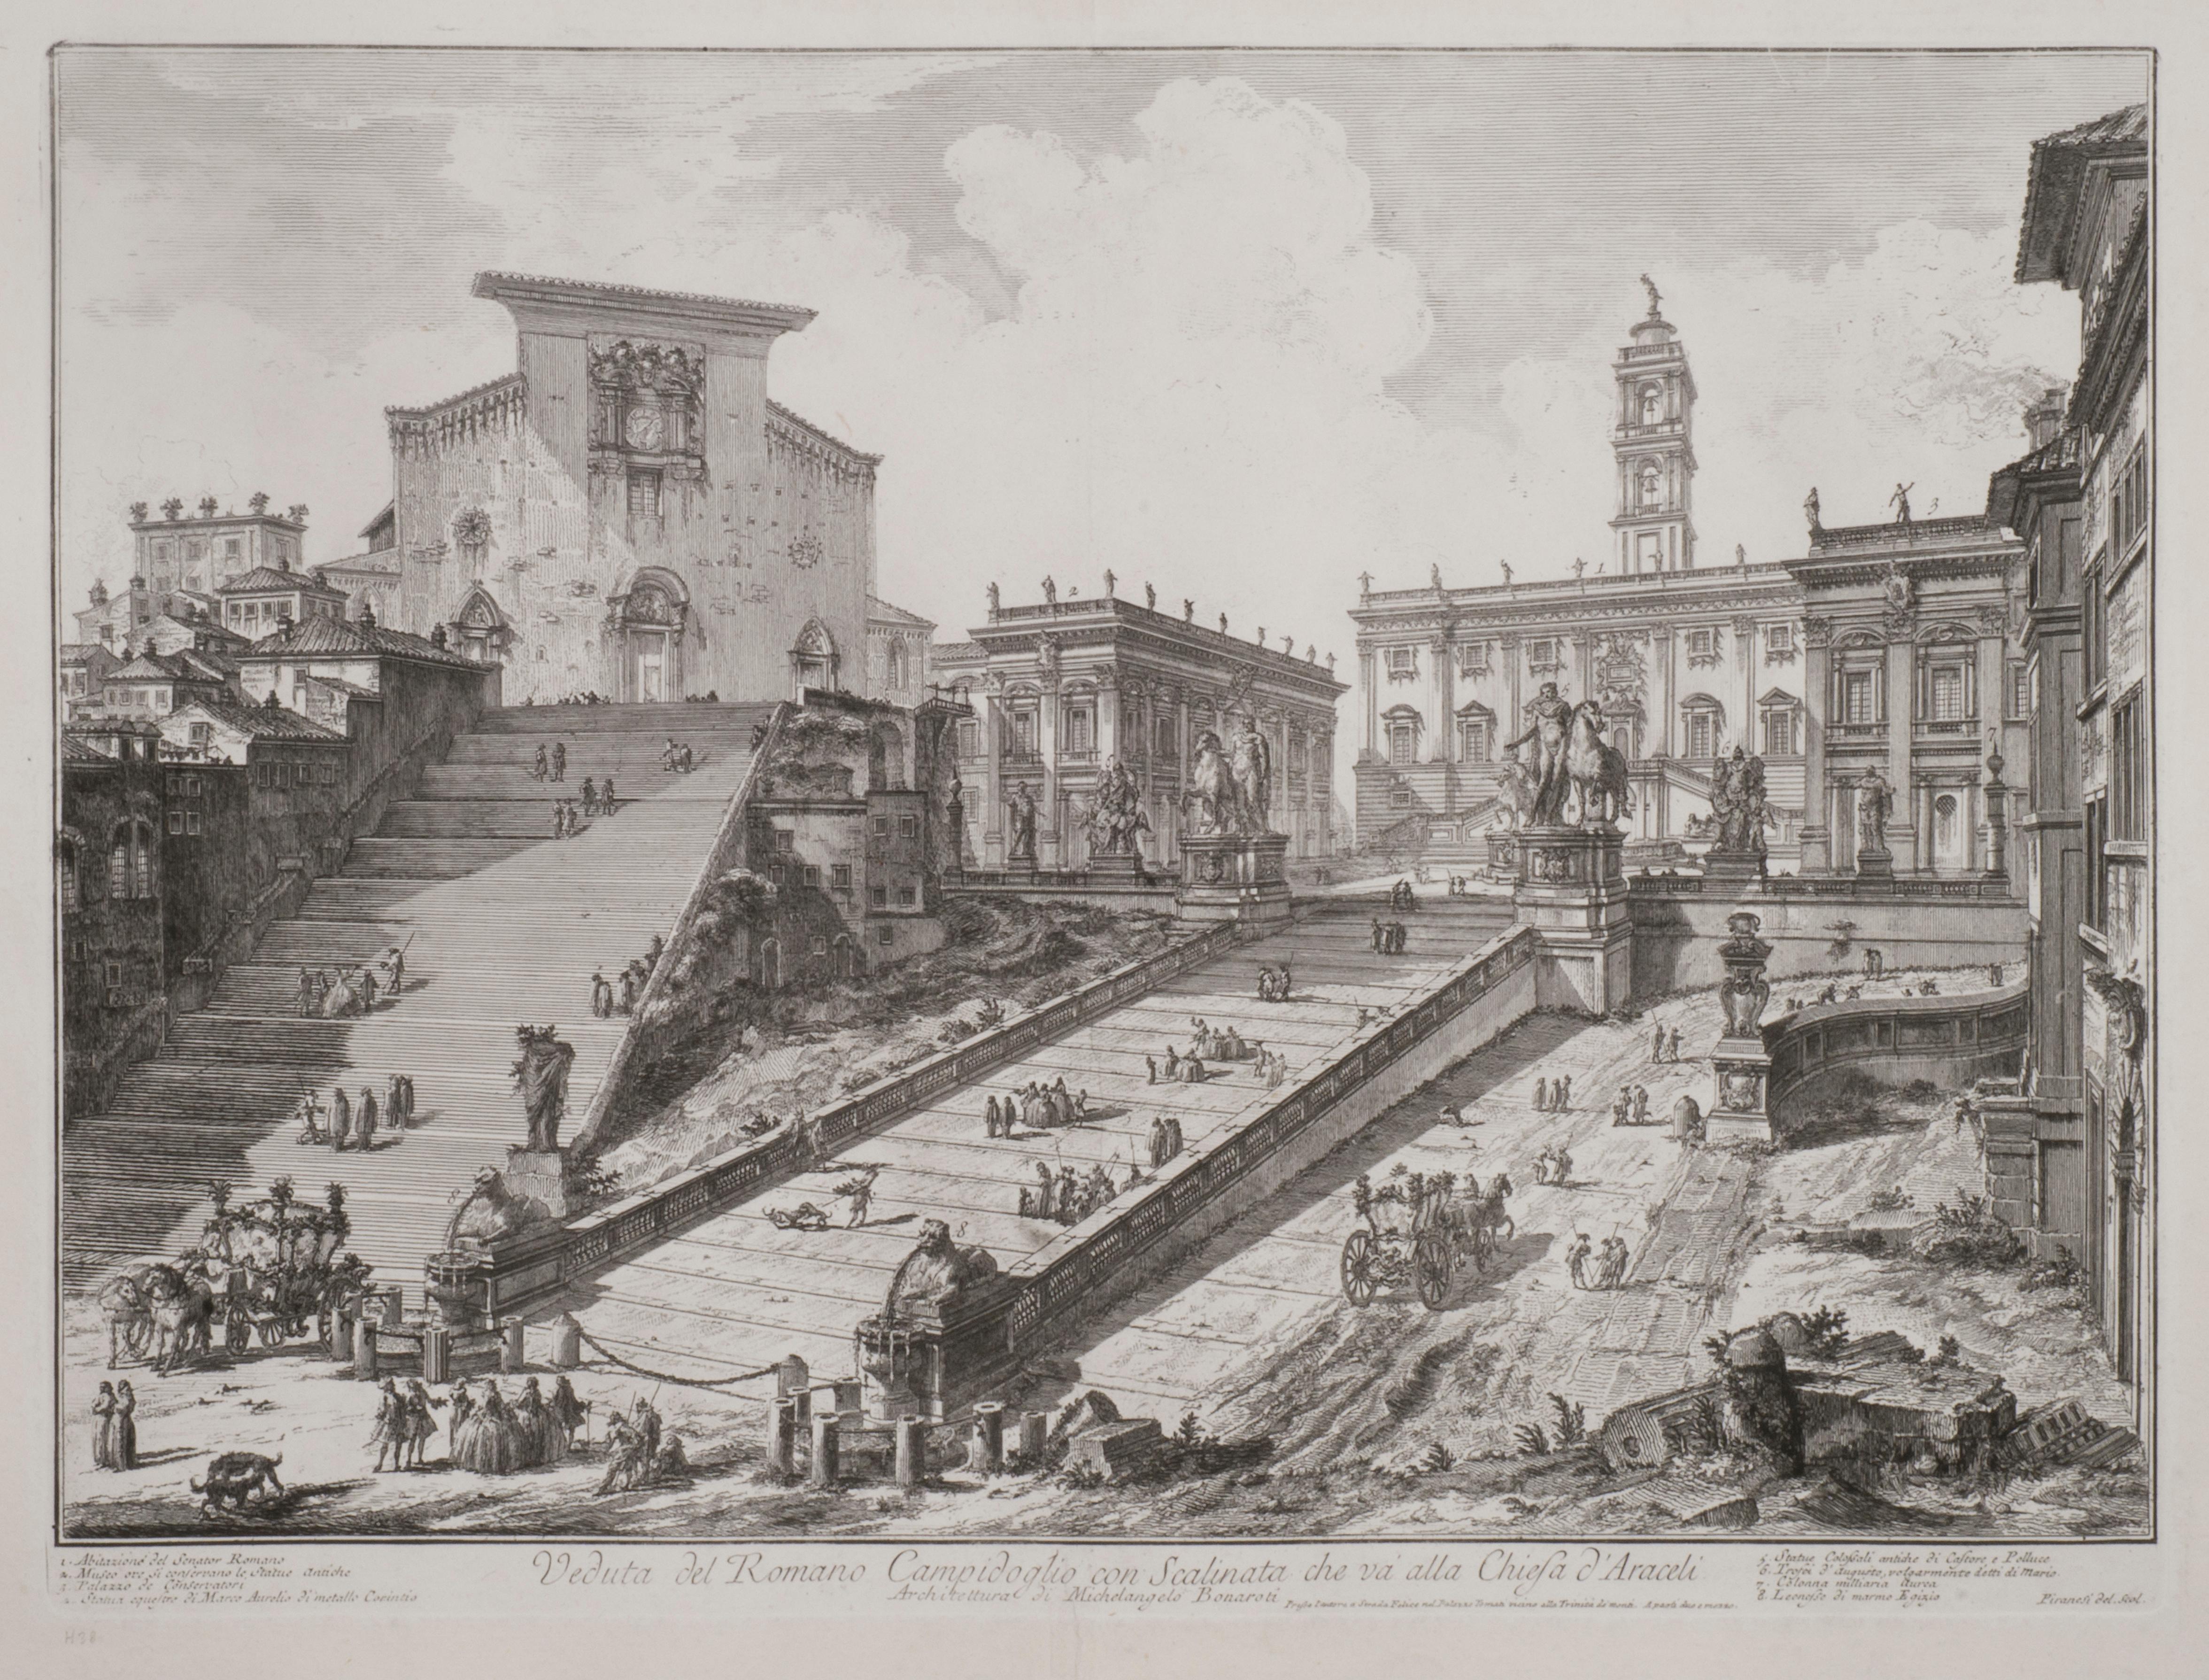 Giovanni Battista Piranesi Landscape Print – Veduta del Romano Camipidpglio con scalinata che va alla chisea d'Araceli (The C